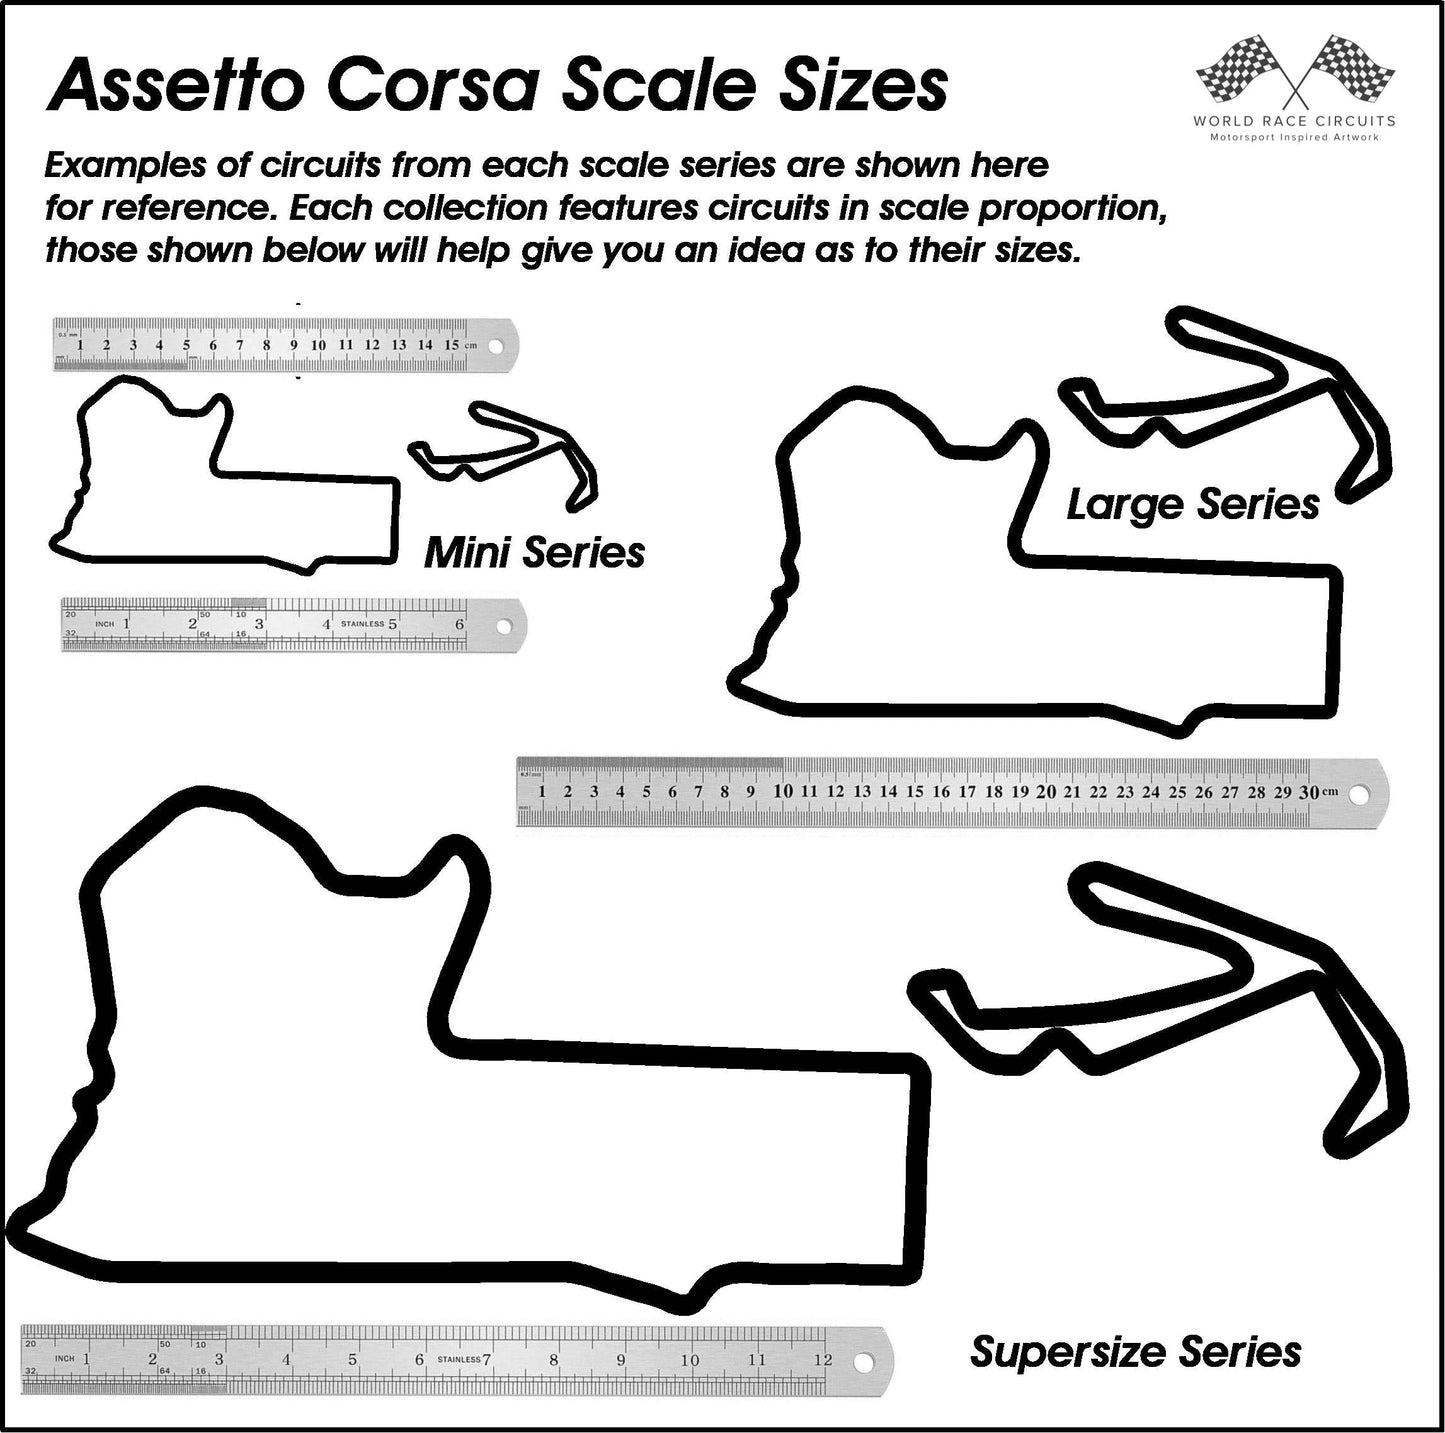 Assetto Corsa Competizione - Supersize Series